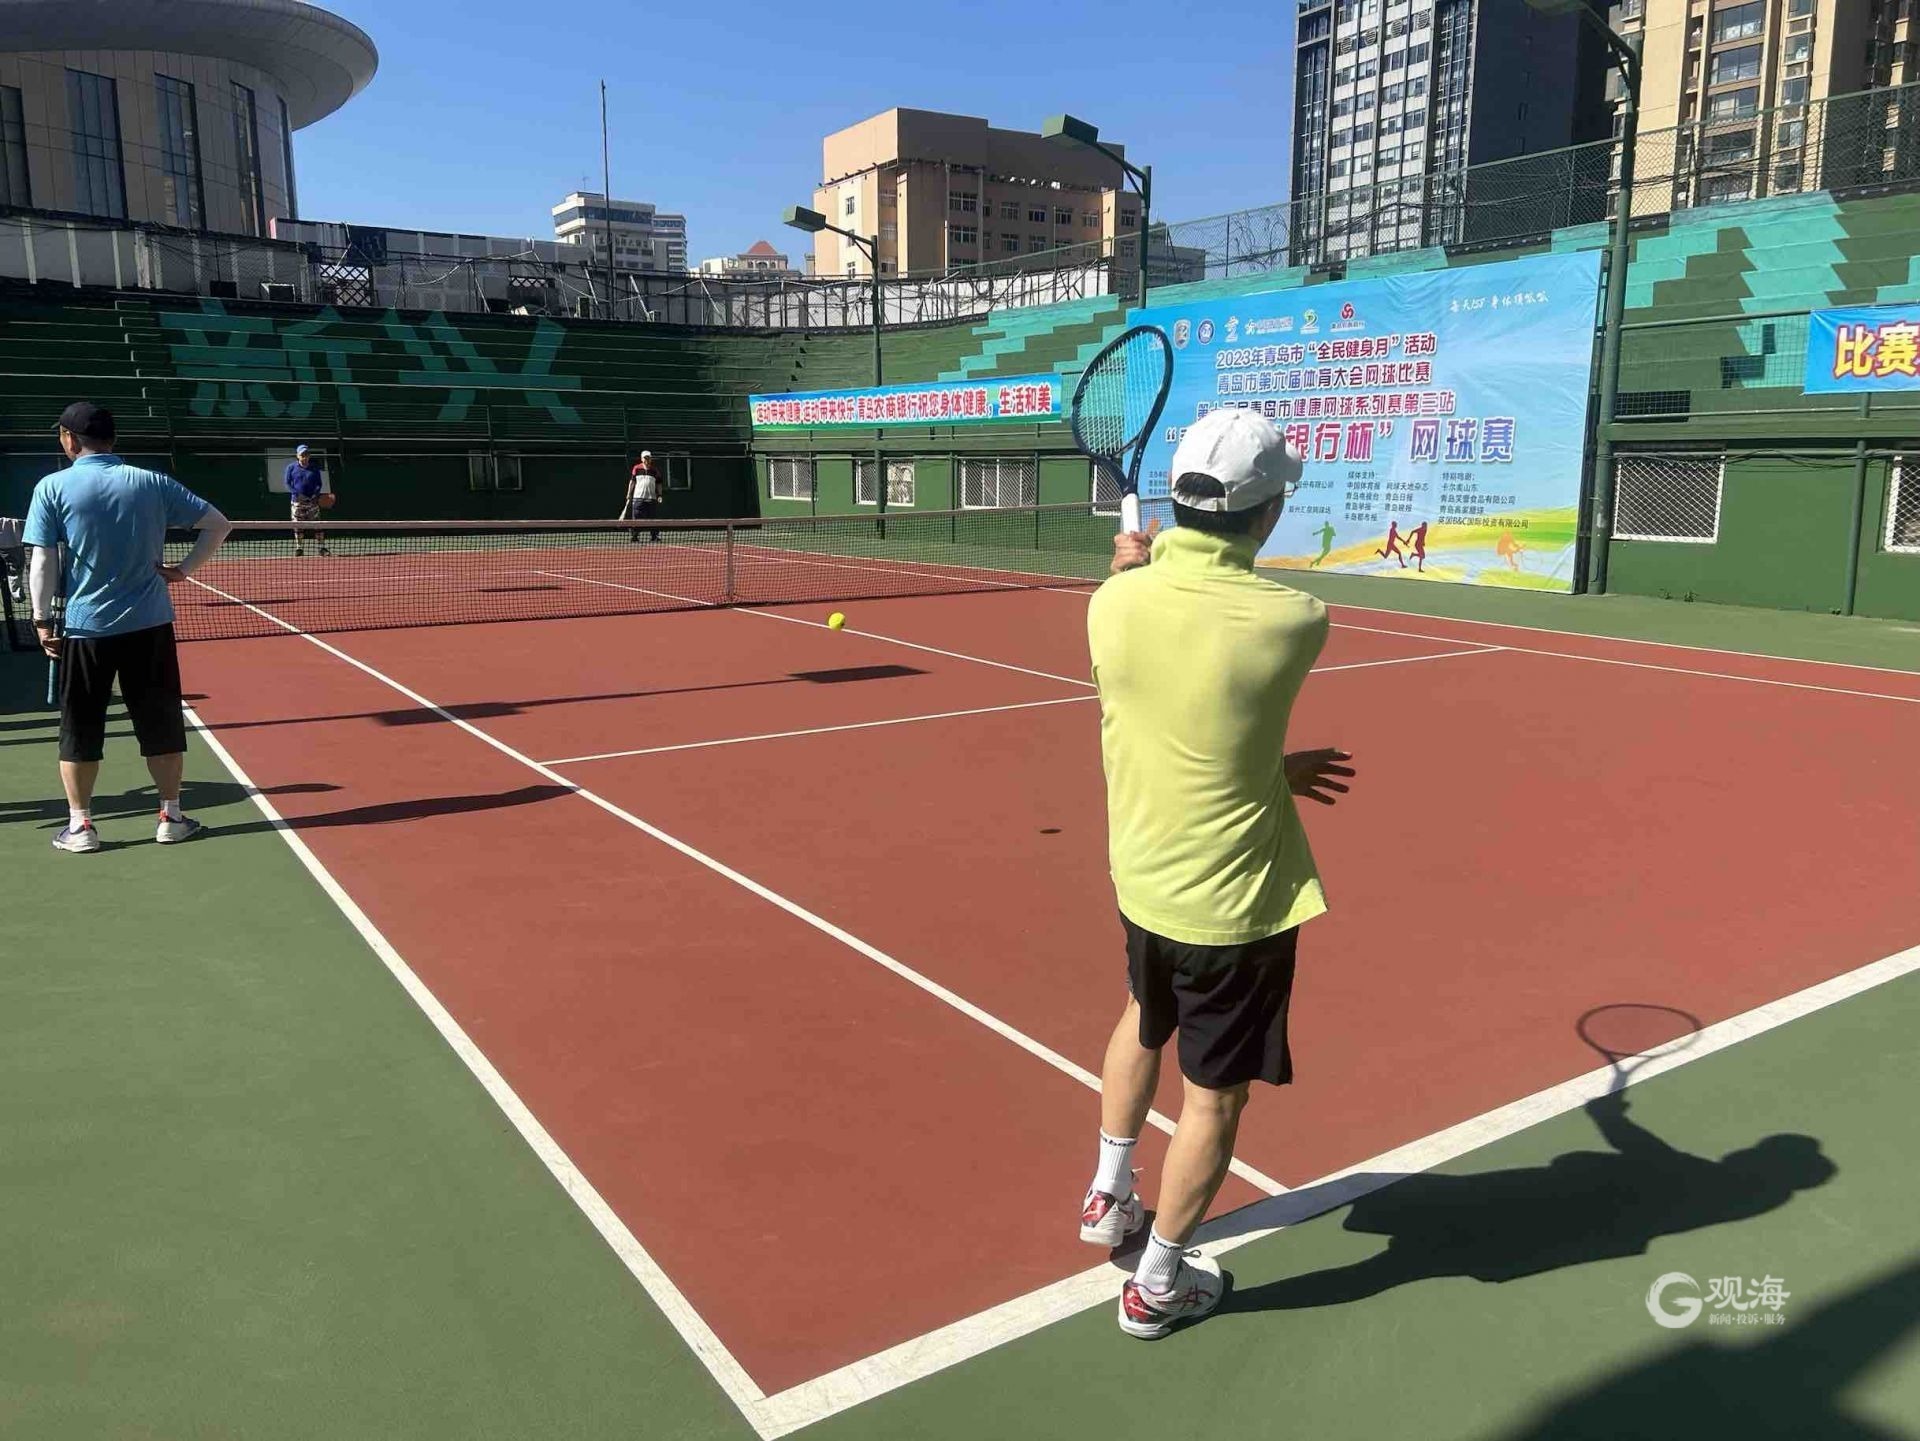 我校网球队于2019年安徽省大学生网球联赛中喜获佳绩